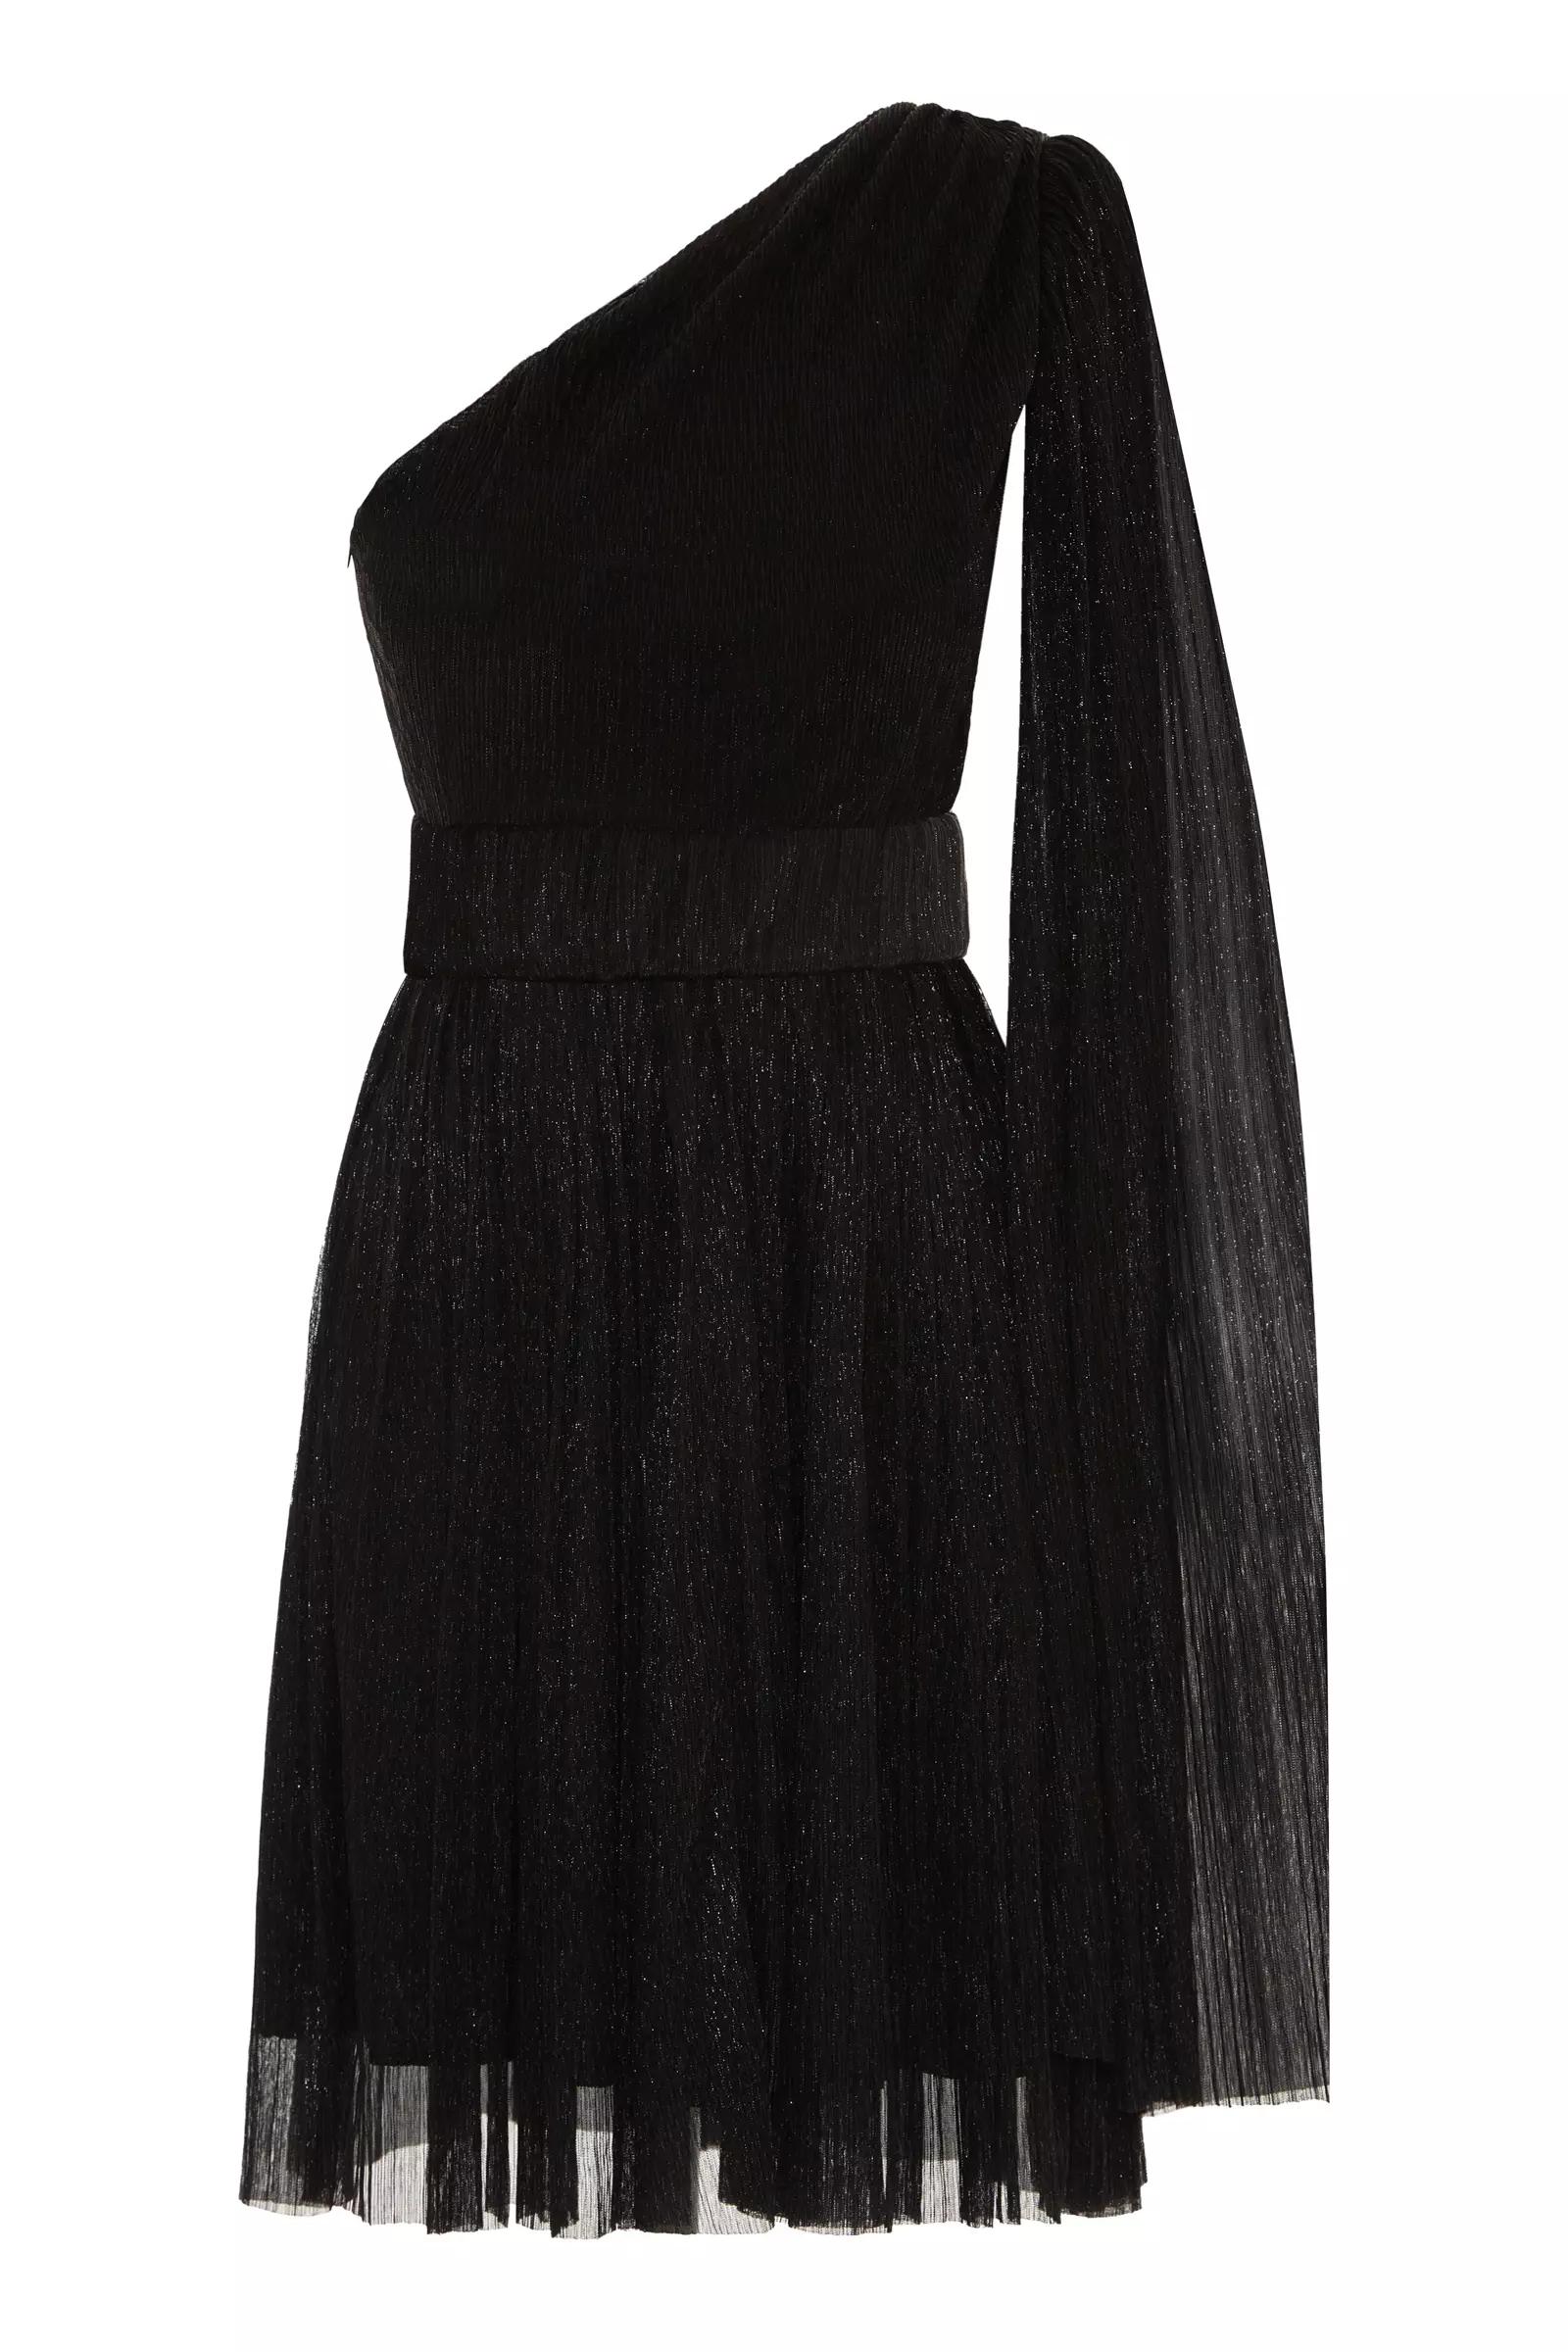 Black moonlight one arm mini dress